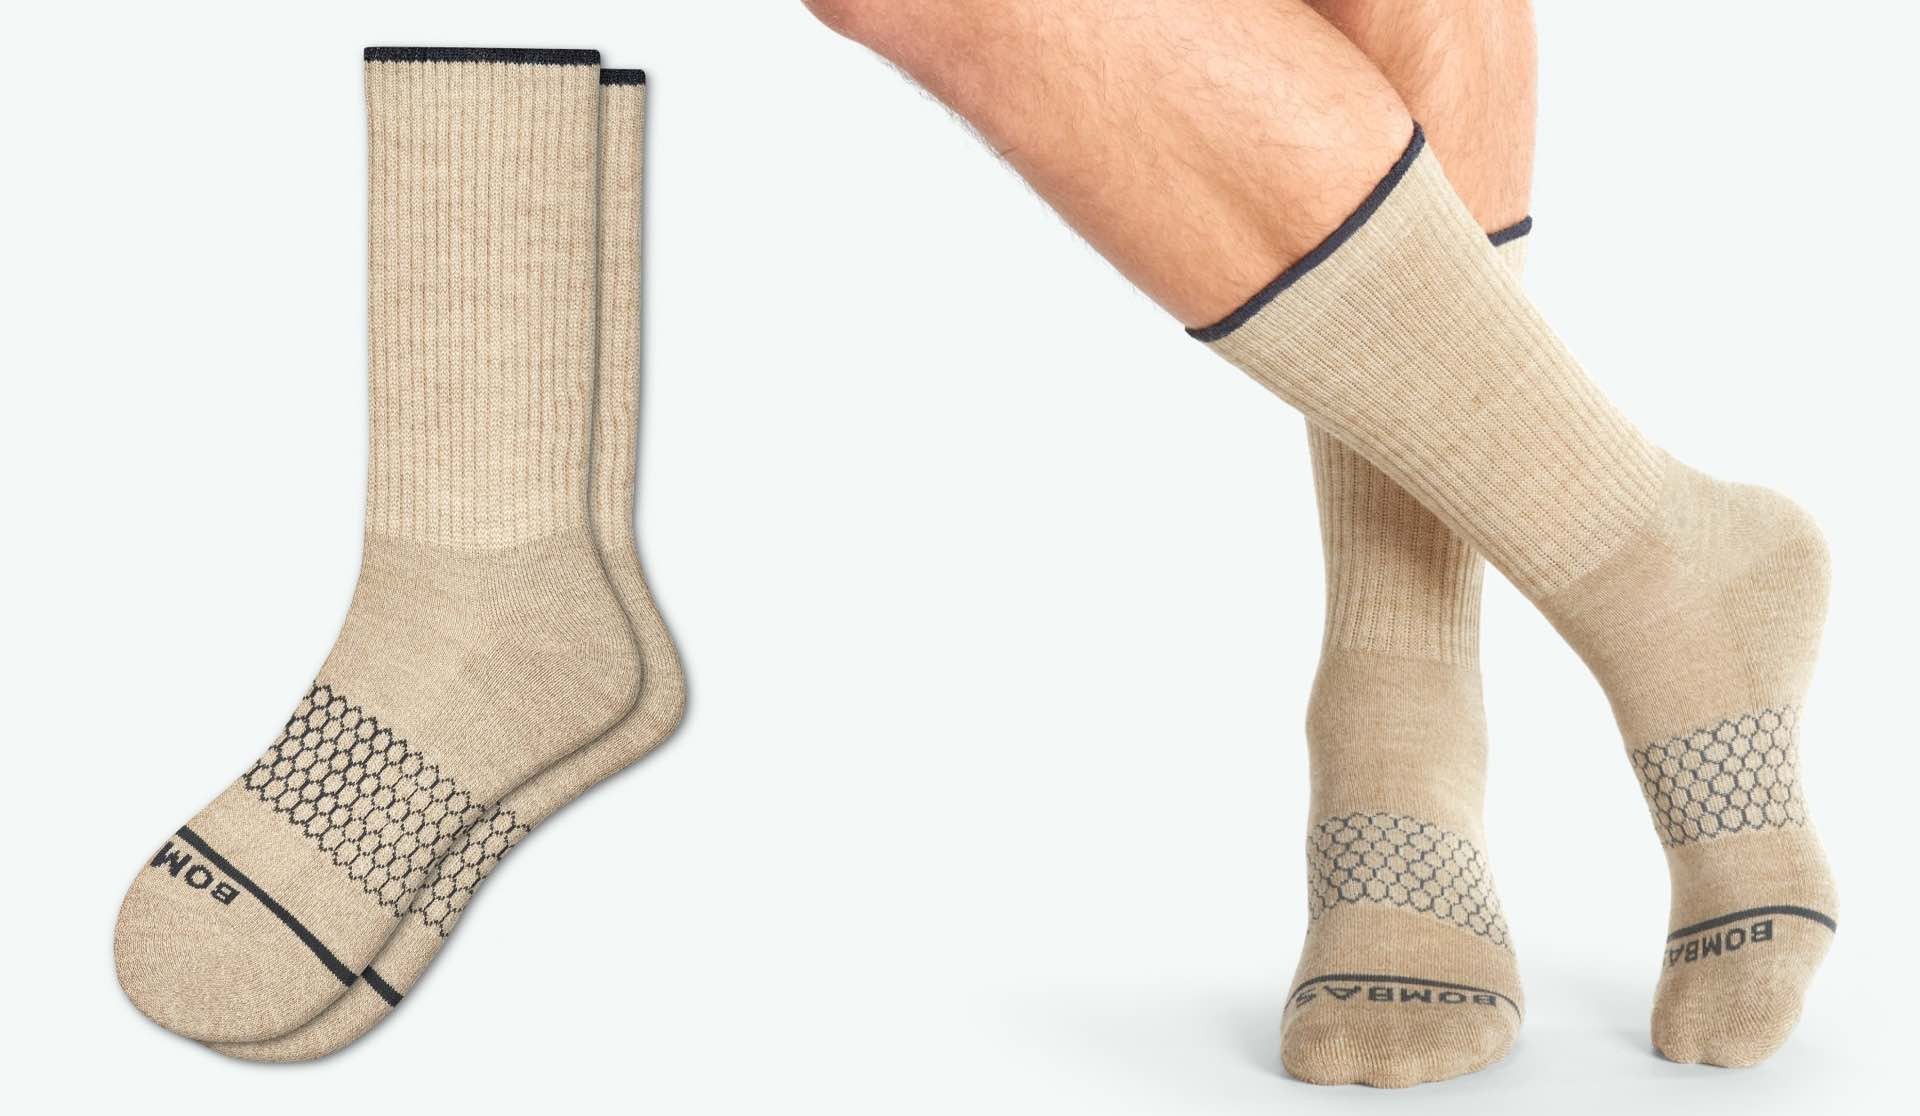 Bombas men's merino wool calf socks. ($20 per pair)